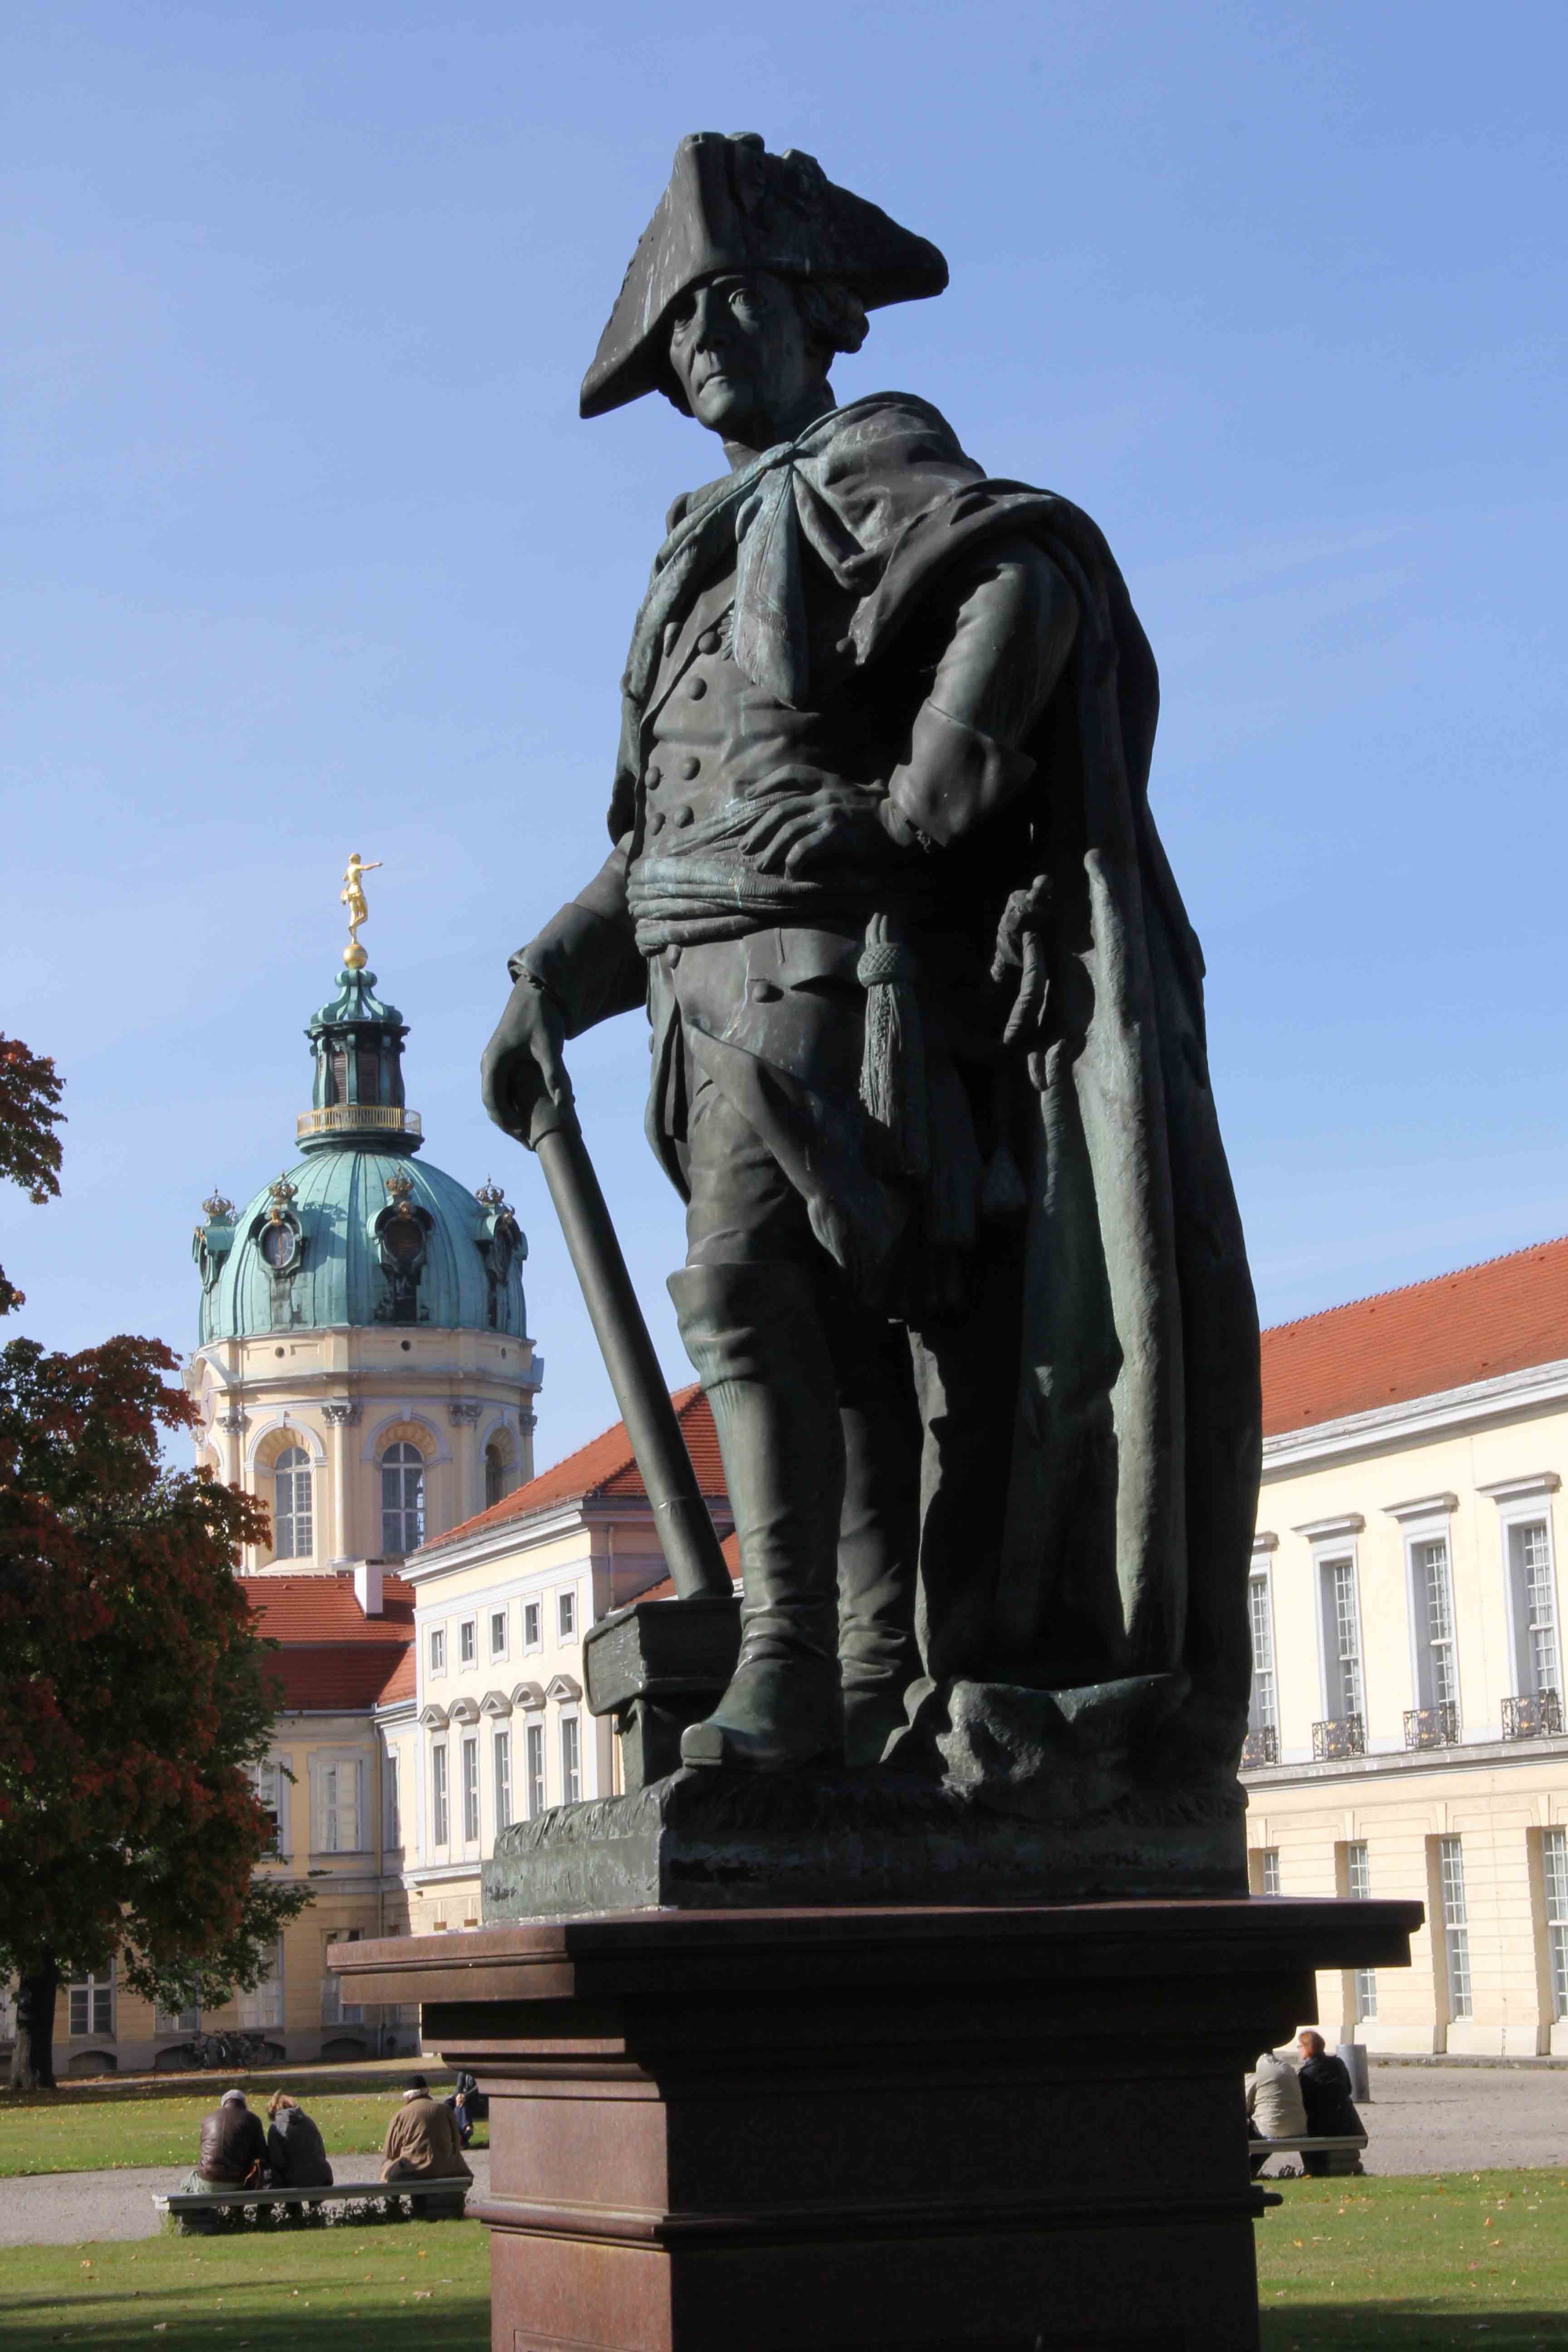 A statue of Friedrich der Grosse (Friedrich II) in the grounds of Schloss Charlottenburg in Berlin